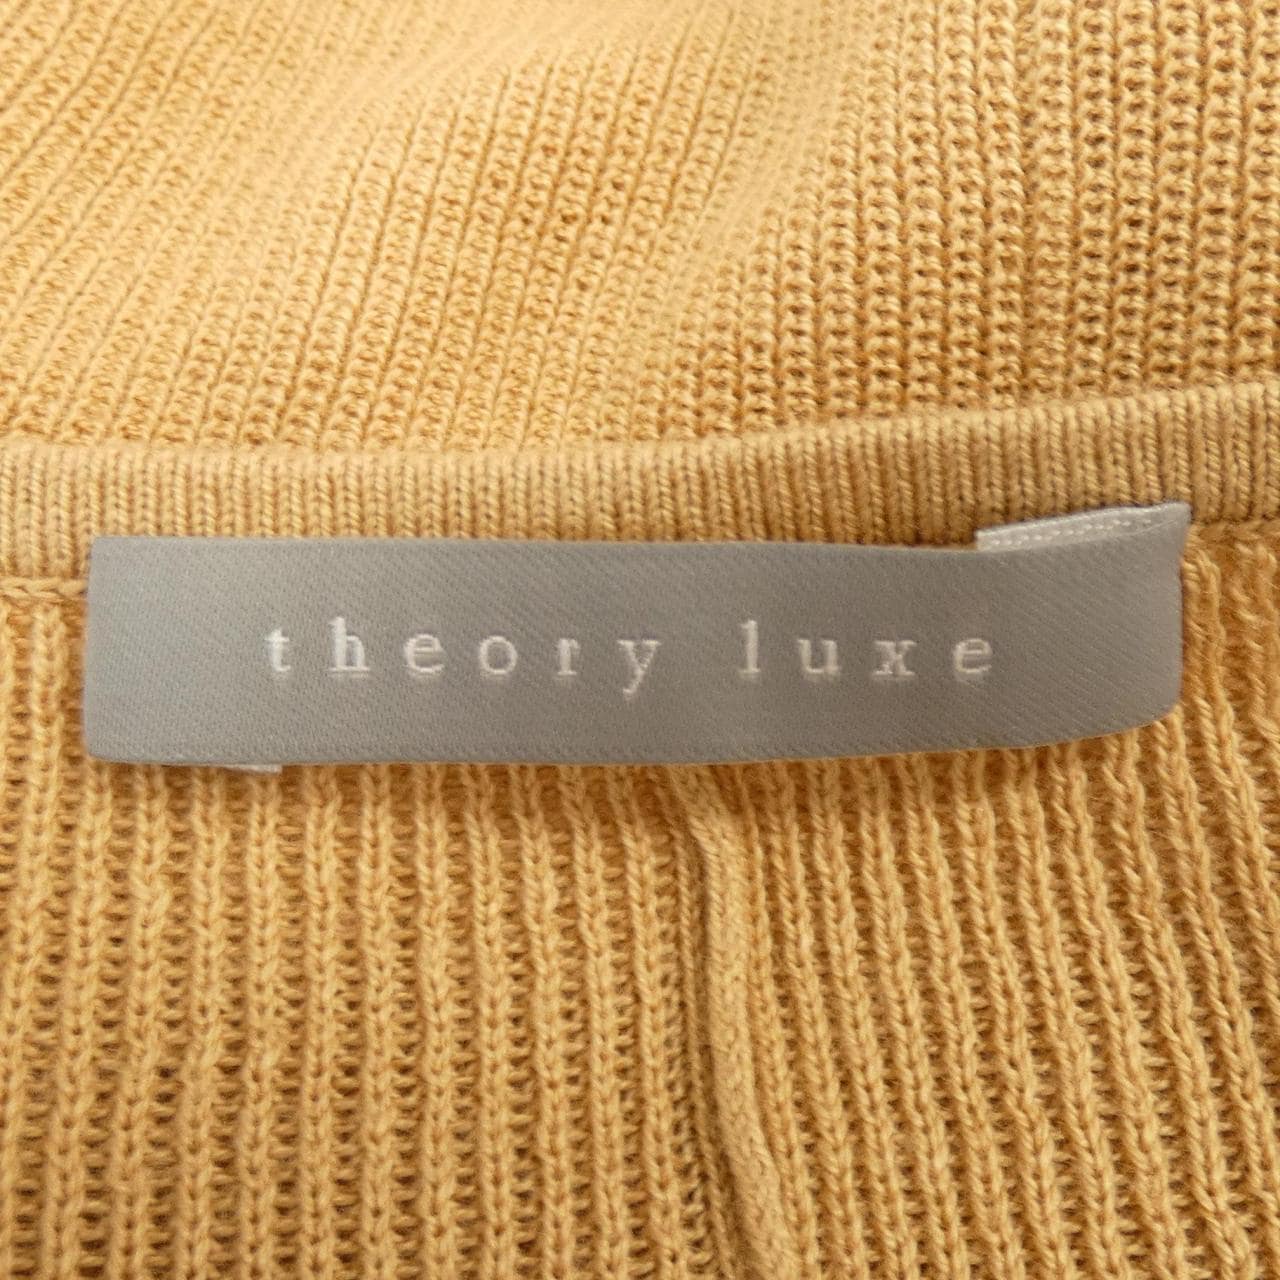 塞奥利柳克斯Theory luxe针织衫